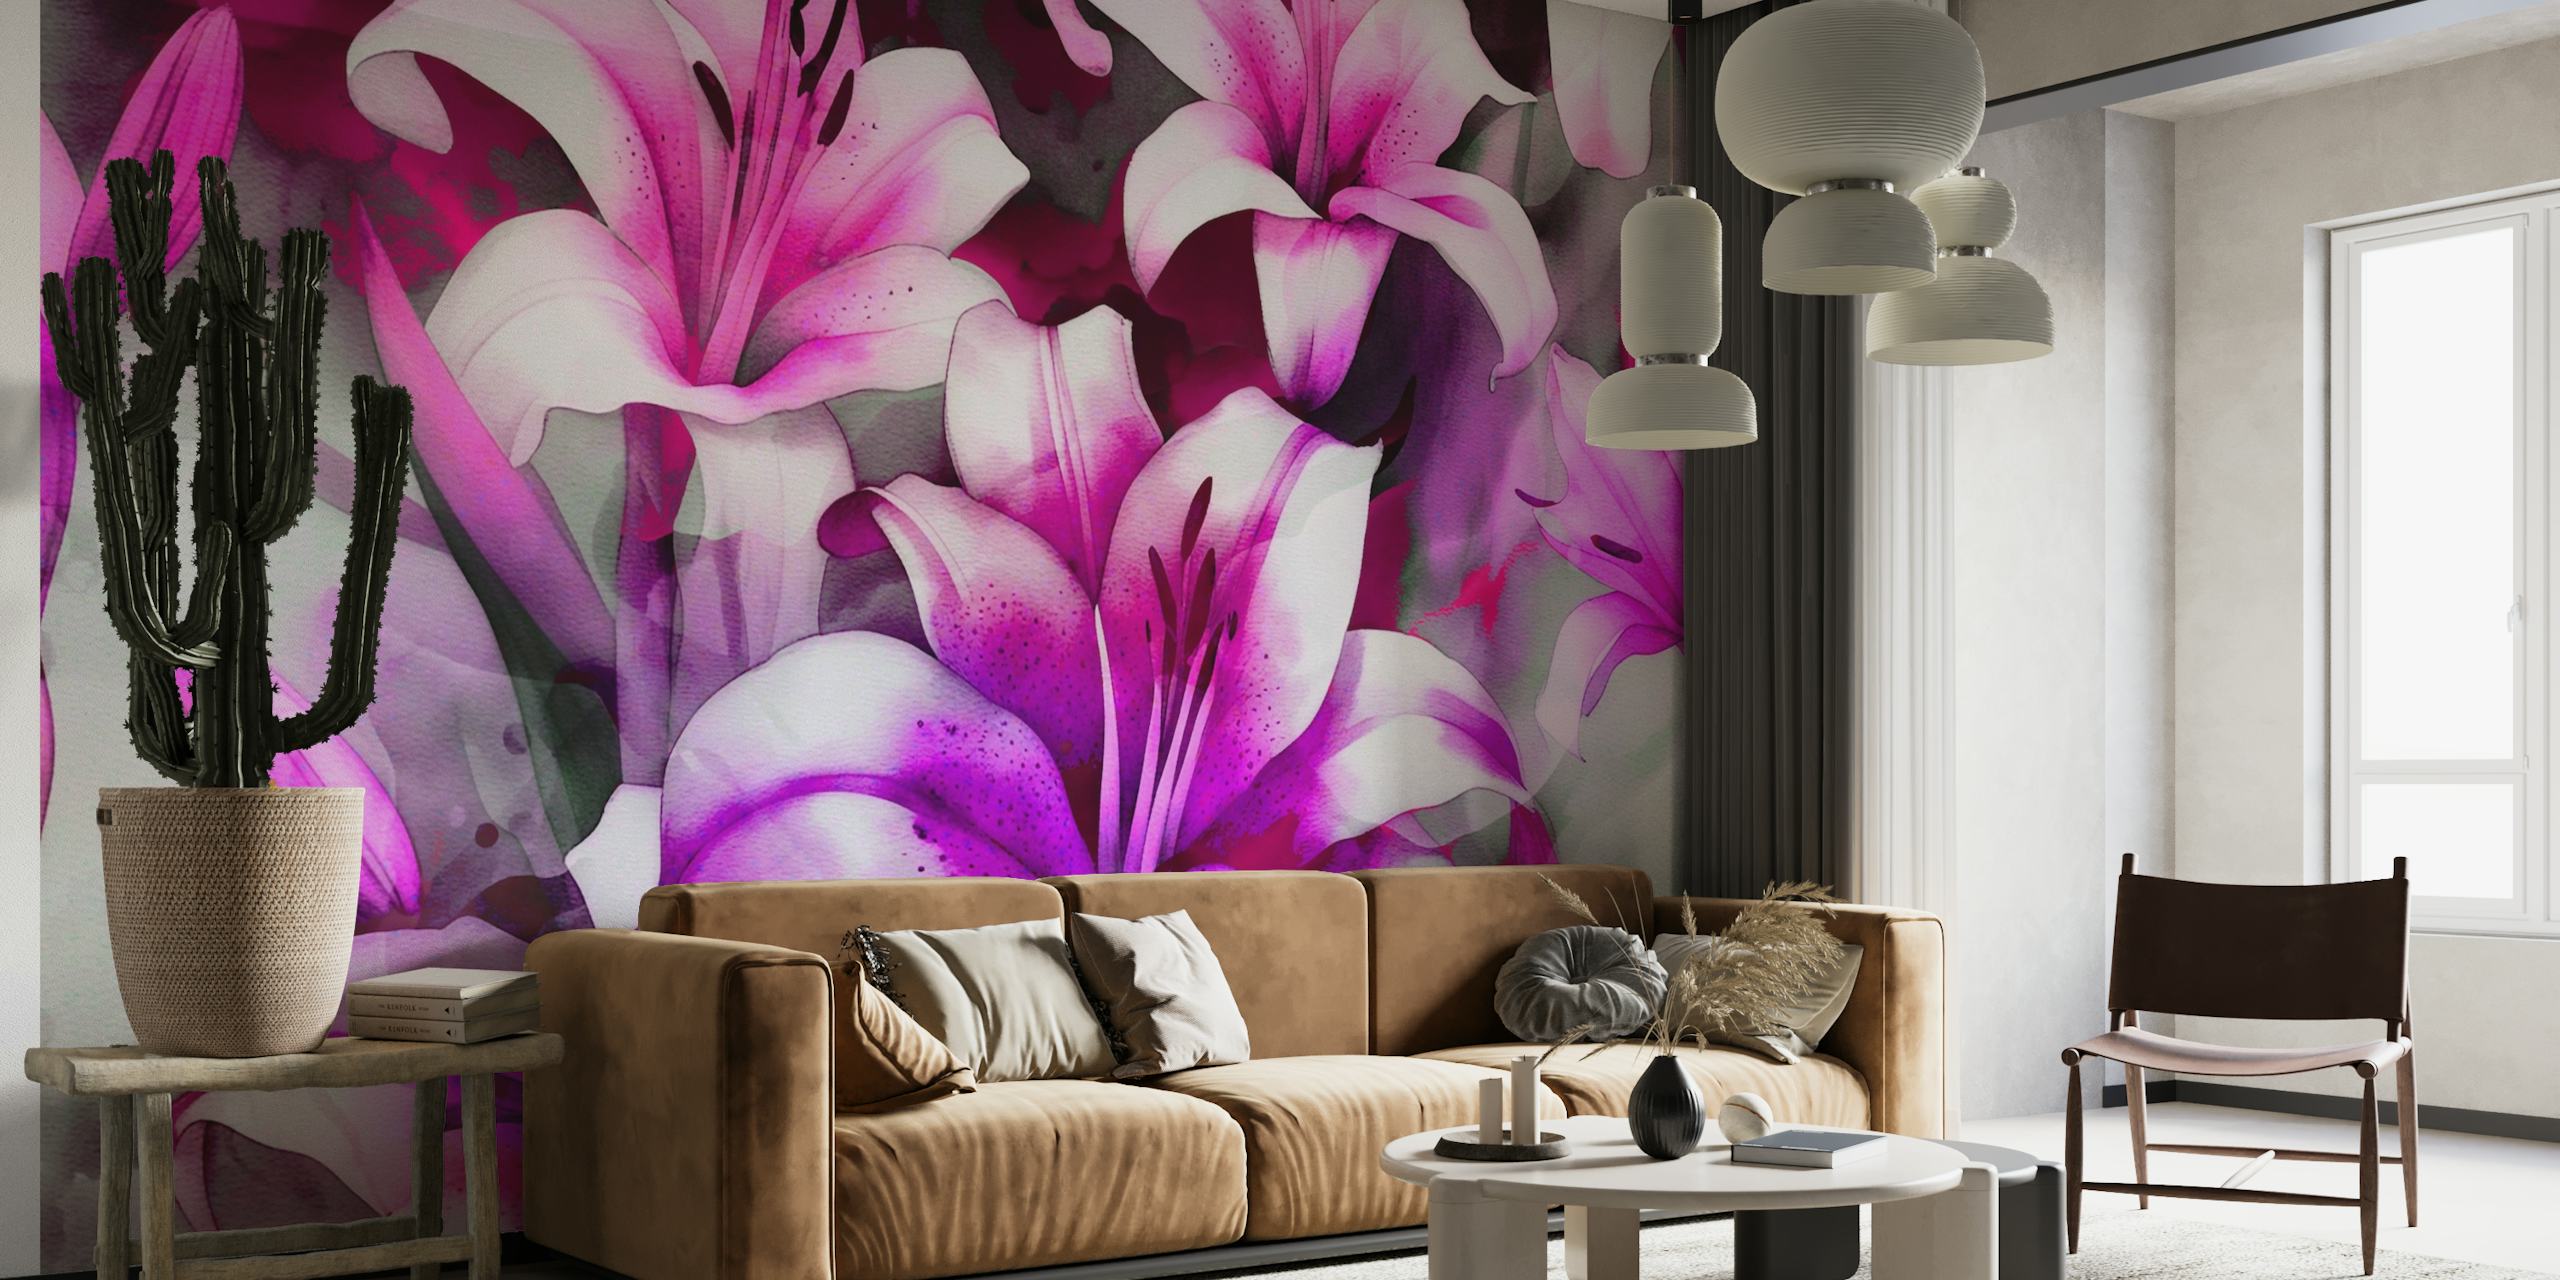 Abstrakt akvarellmålning av rosa och lila liljor med en drömsk estetik